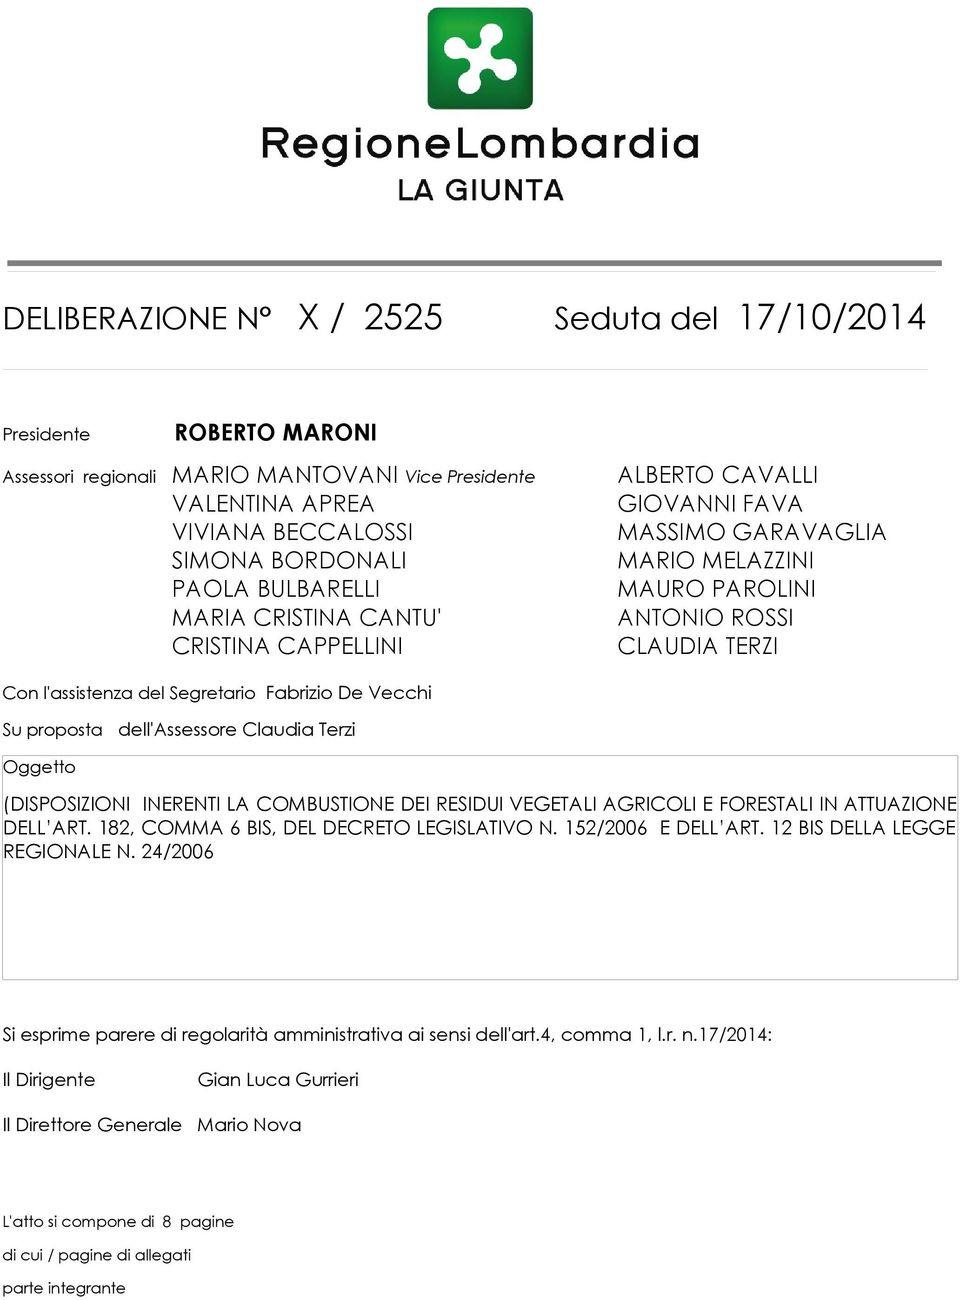 proposta dell'assessore Claudia Terzi Oggetto (DISPOSIZIONI INERENTI LA COMBUSTIONE DEI RESIDUI VEGETALI AGRICOLI E FORESTALI IN ATTUAZIONE DELL ART. 182, COMMA 6 BIS, DEL DECRETO LEGISLATIVO N.